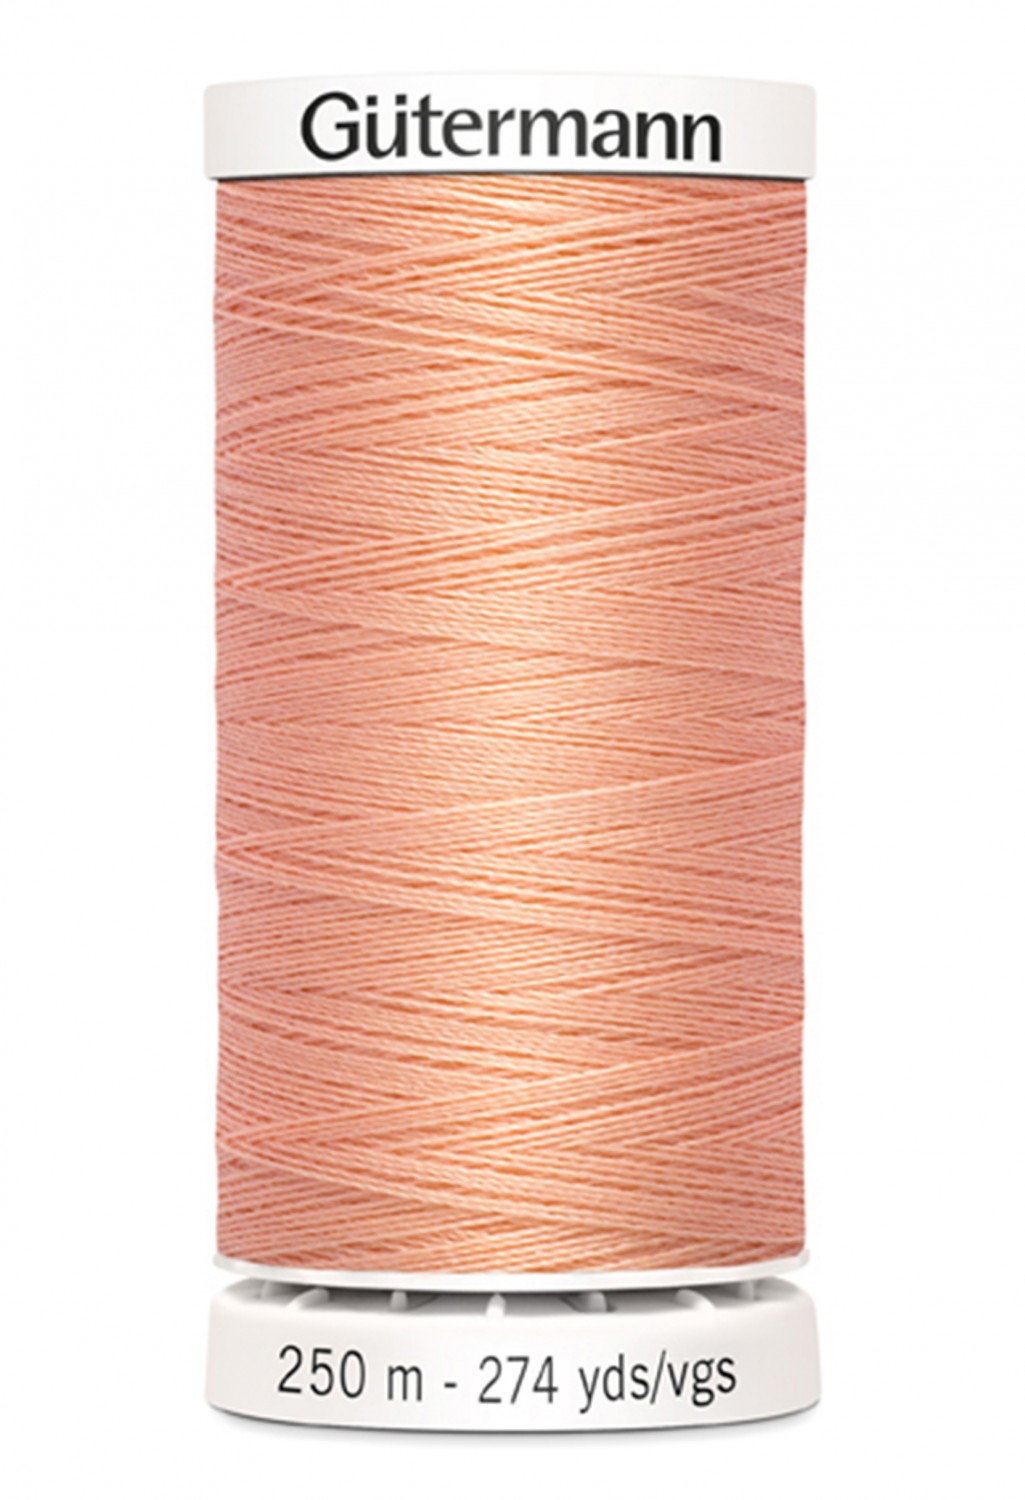 Gütermann Sew-All Thread 250m - Peach Col. 365